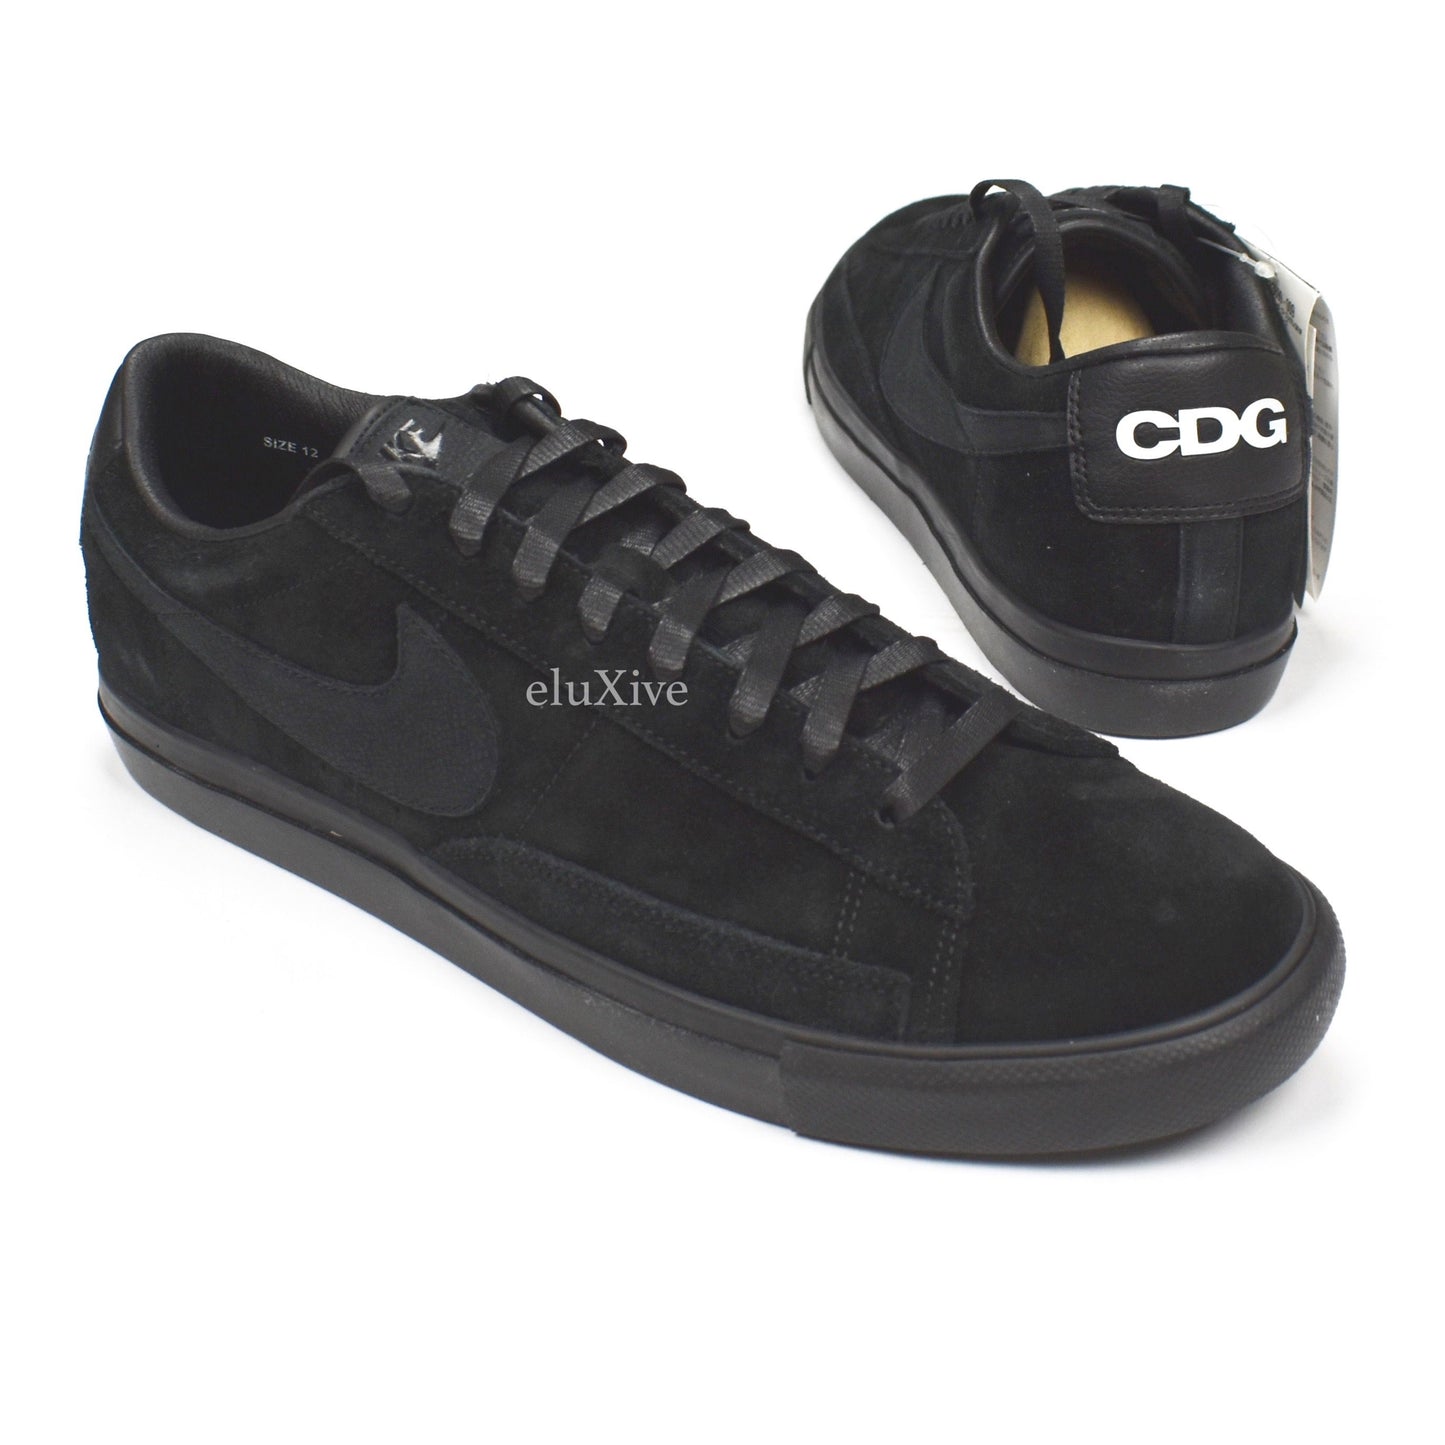 malicioso bahía imitar Comme des Garcons x Nike - Black Suede Blazer Low Premium CDG Sneakers –  eluXive